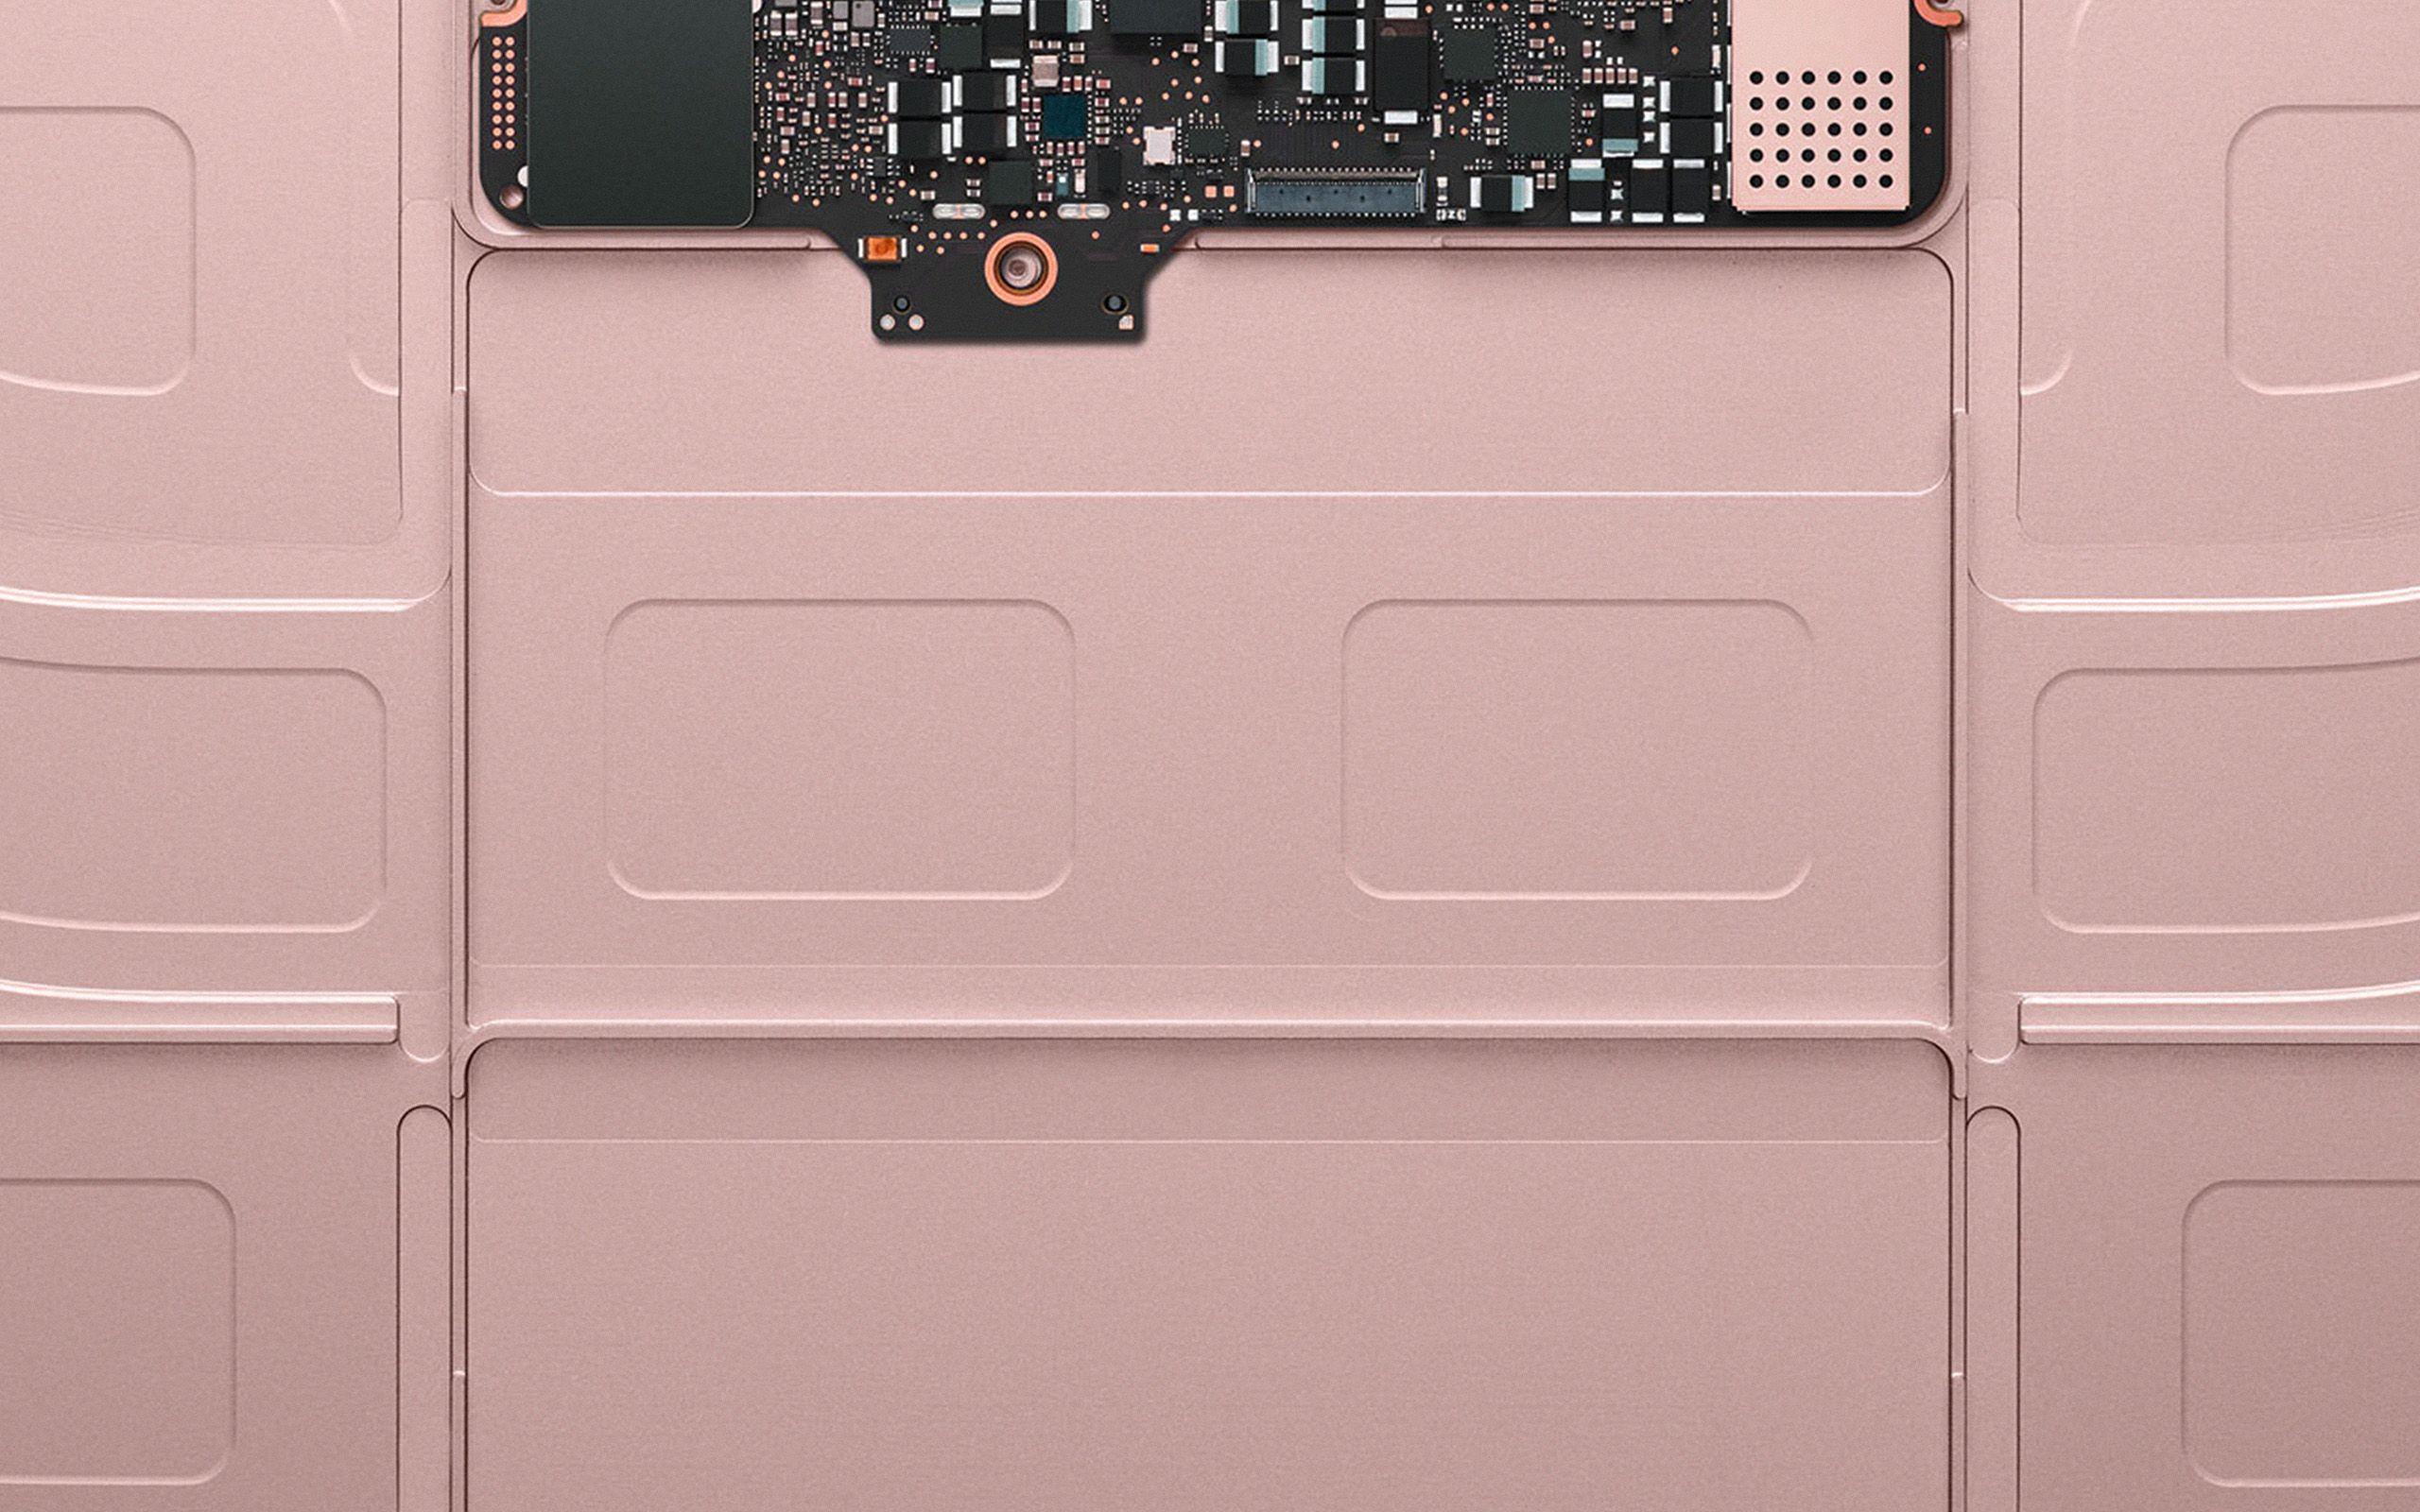 2560x1600 Bên trong Macbook Vàng Apple Minh họa Nghệ thuật Vàng hồng